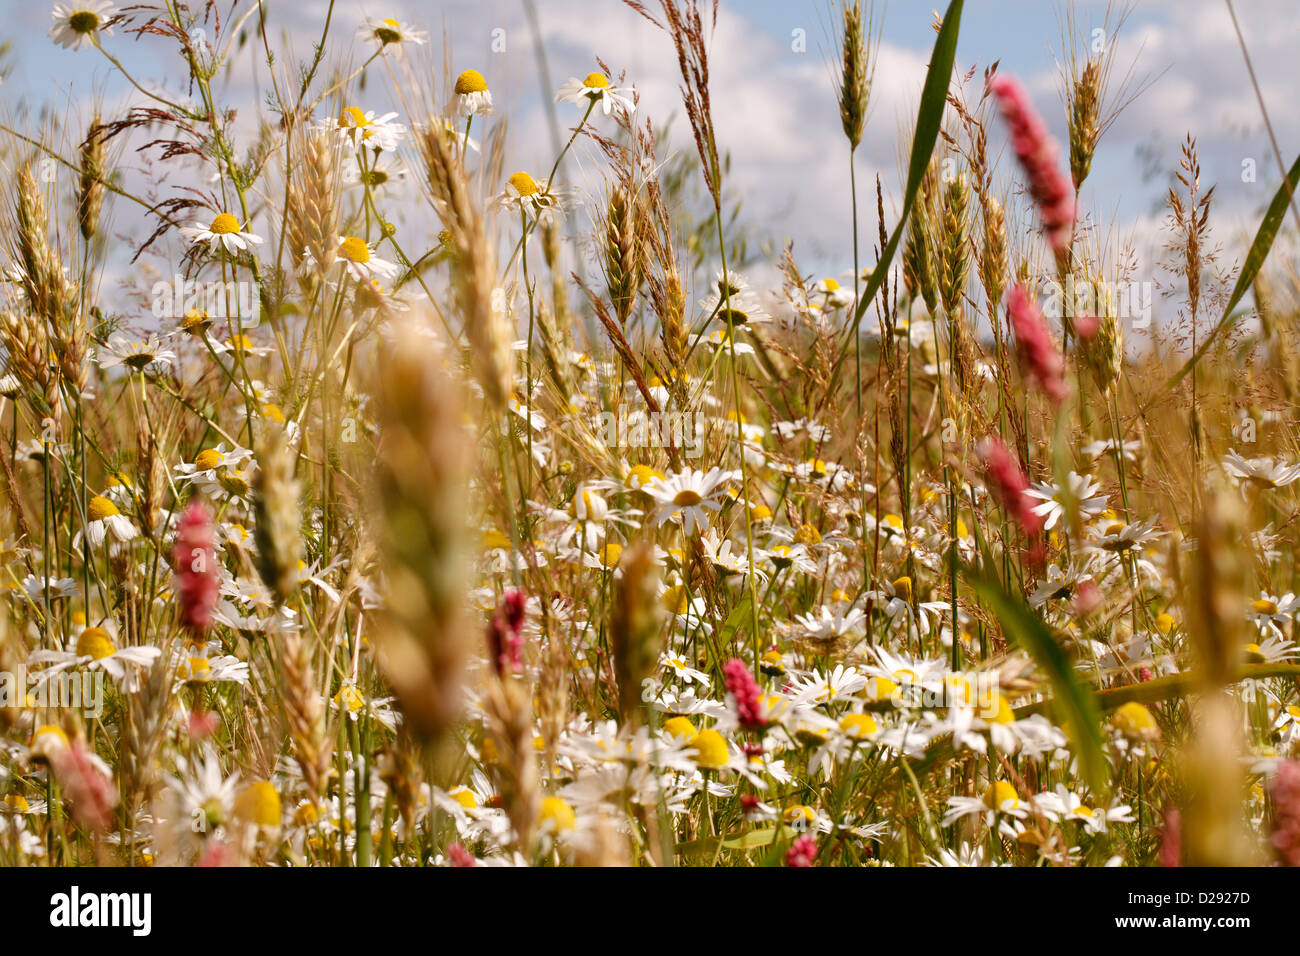 Champ de mauvaises herbes sur le bord d'un champ arable. Le maïs camomille (Anthemis arvensis). Powys, Pays de Galles. Juillet. Banque D'Images